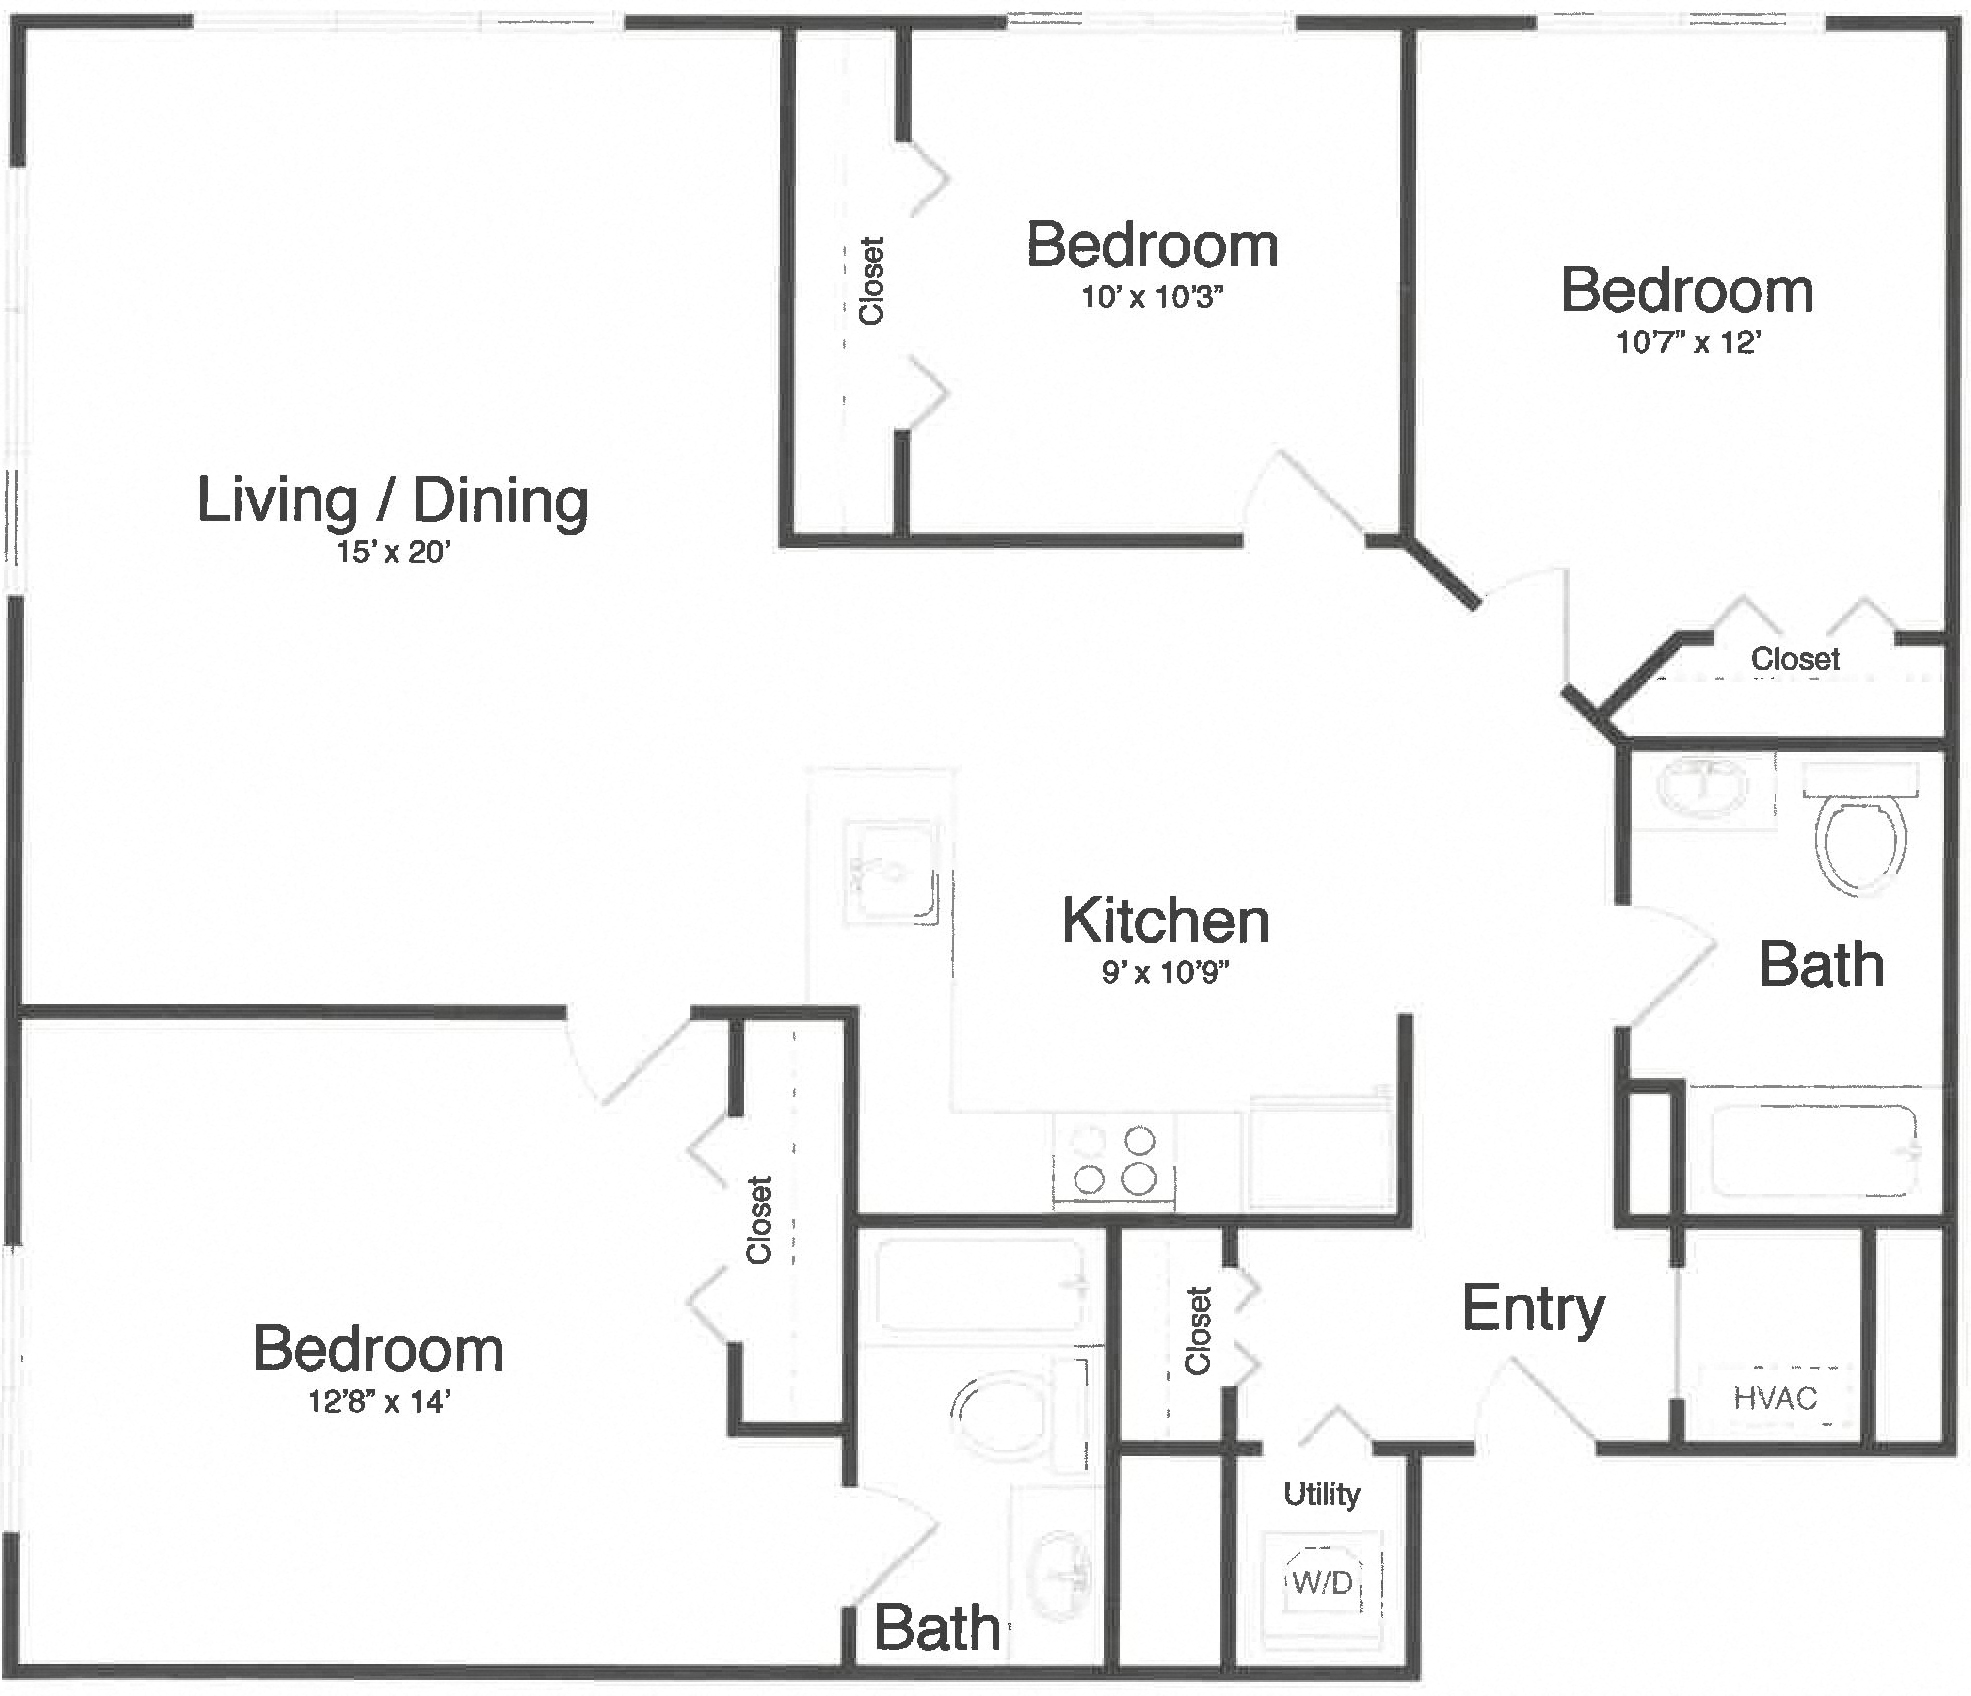 Apartment 1-7C floorplan